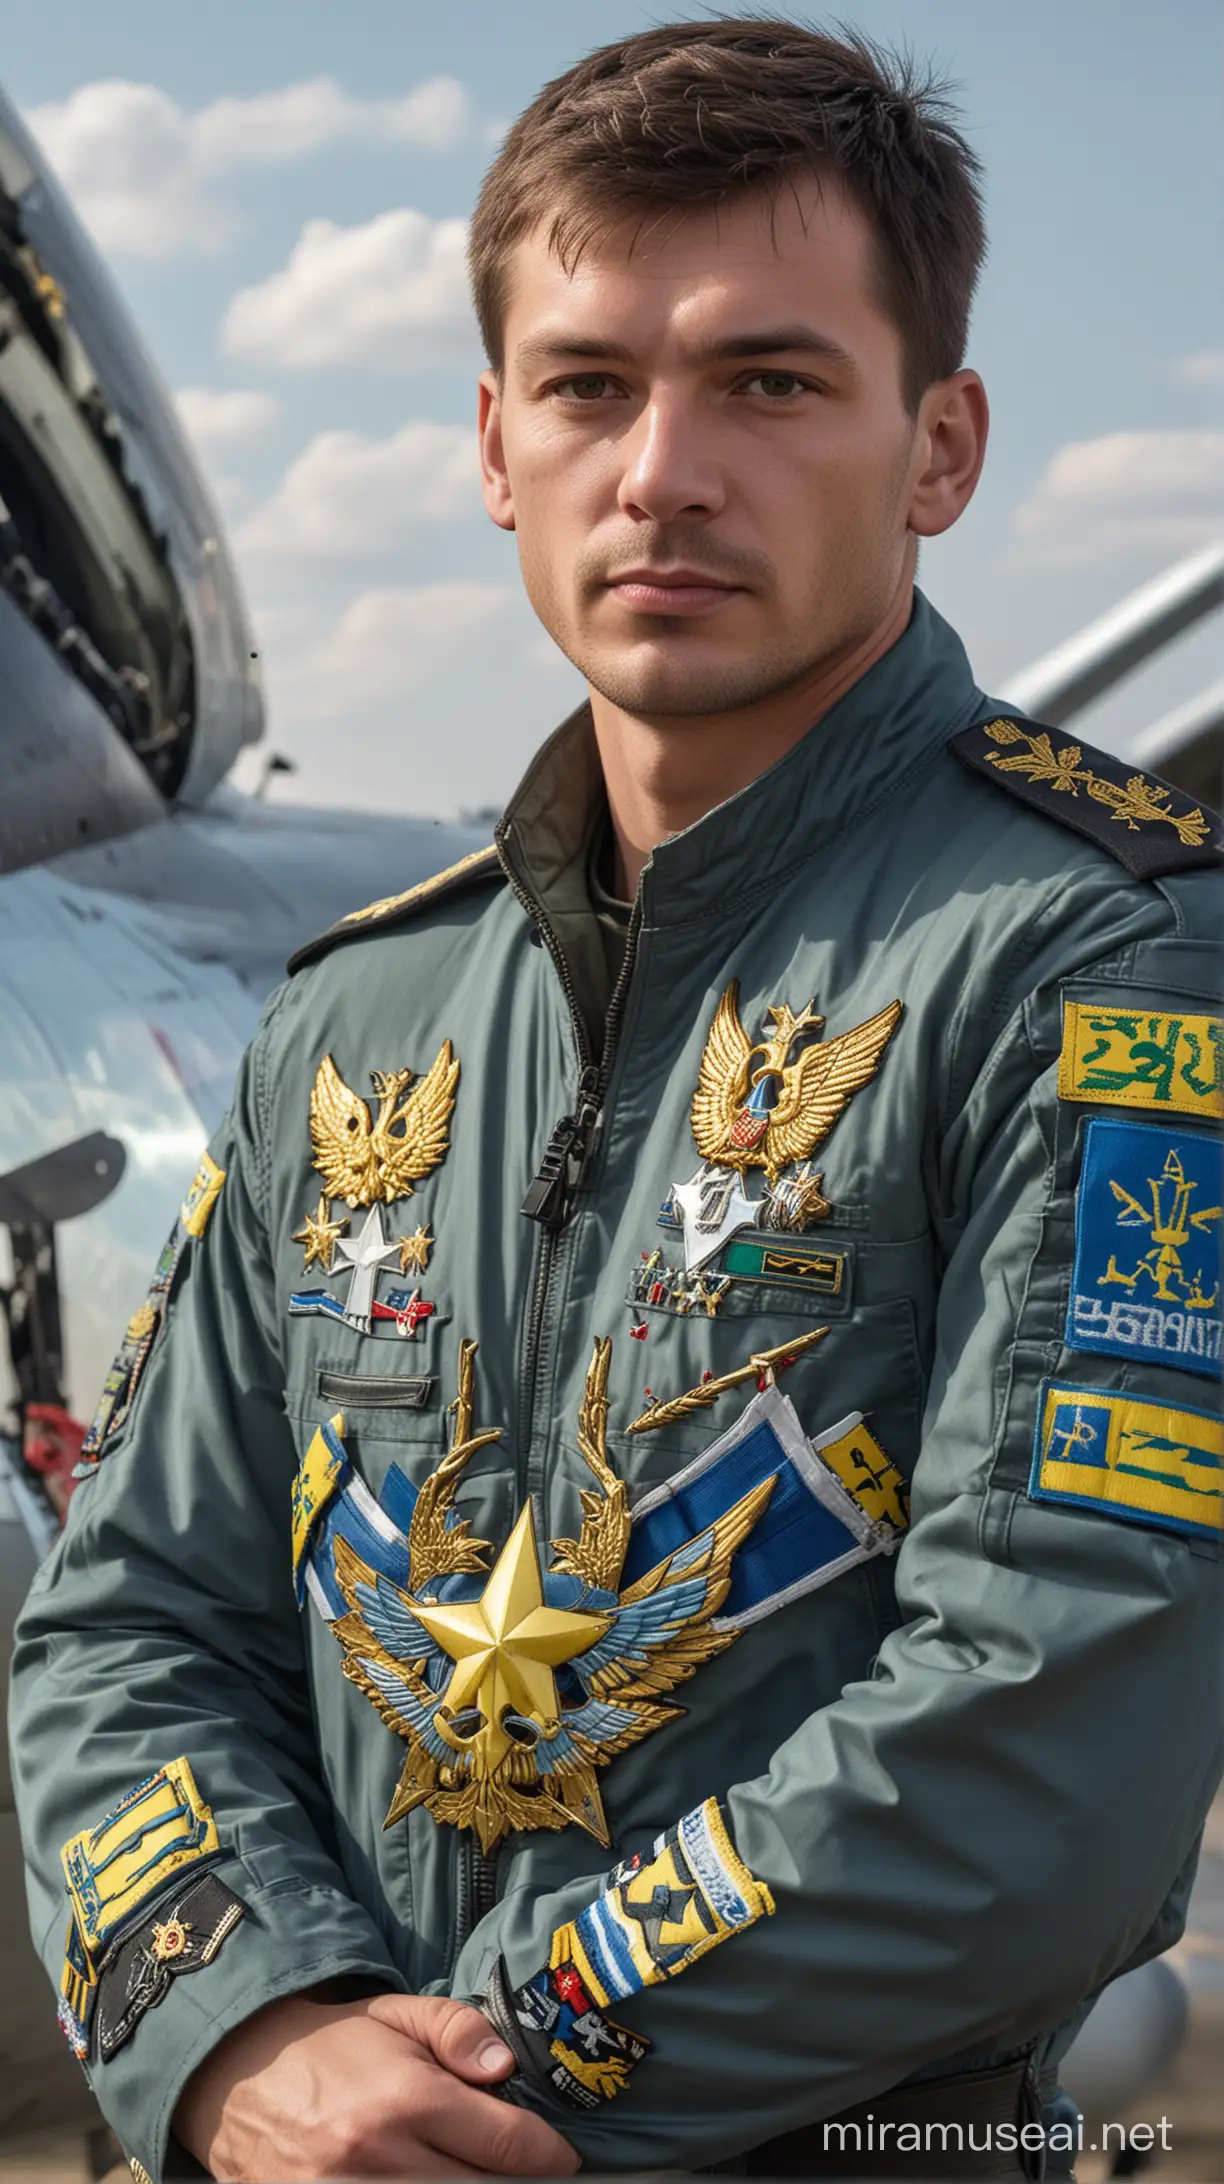 Ukrainian Air Force Pilot Standing beside SU27 Fighter Jet